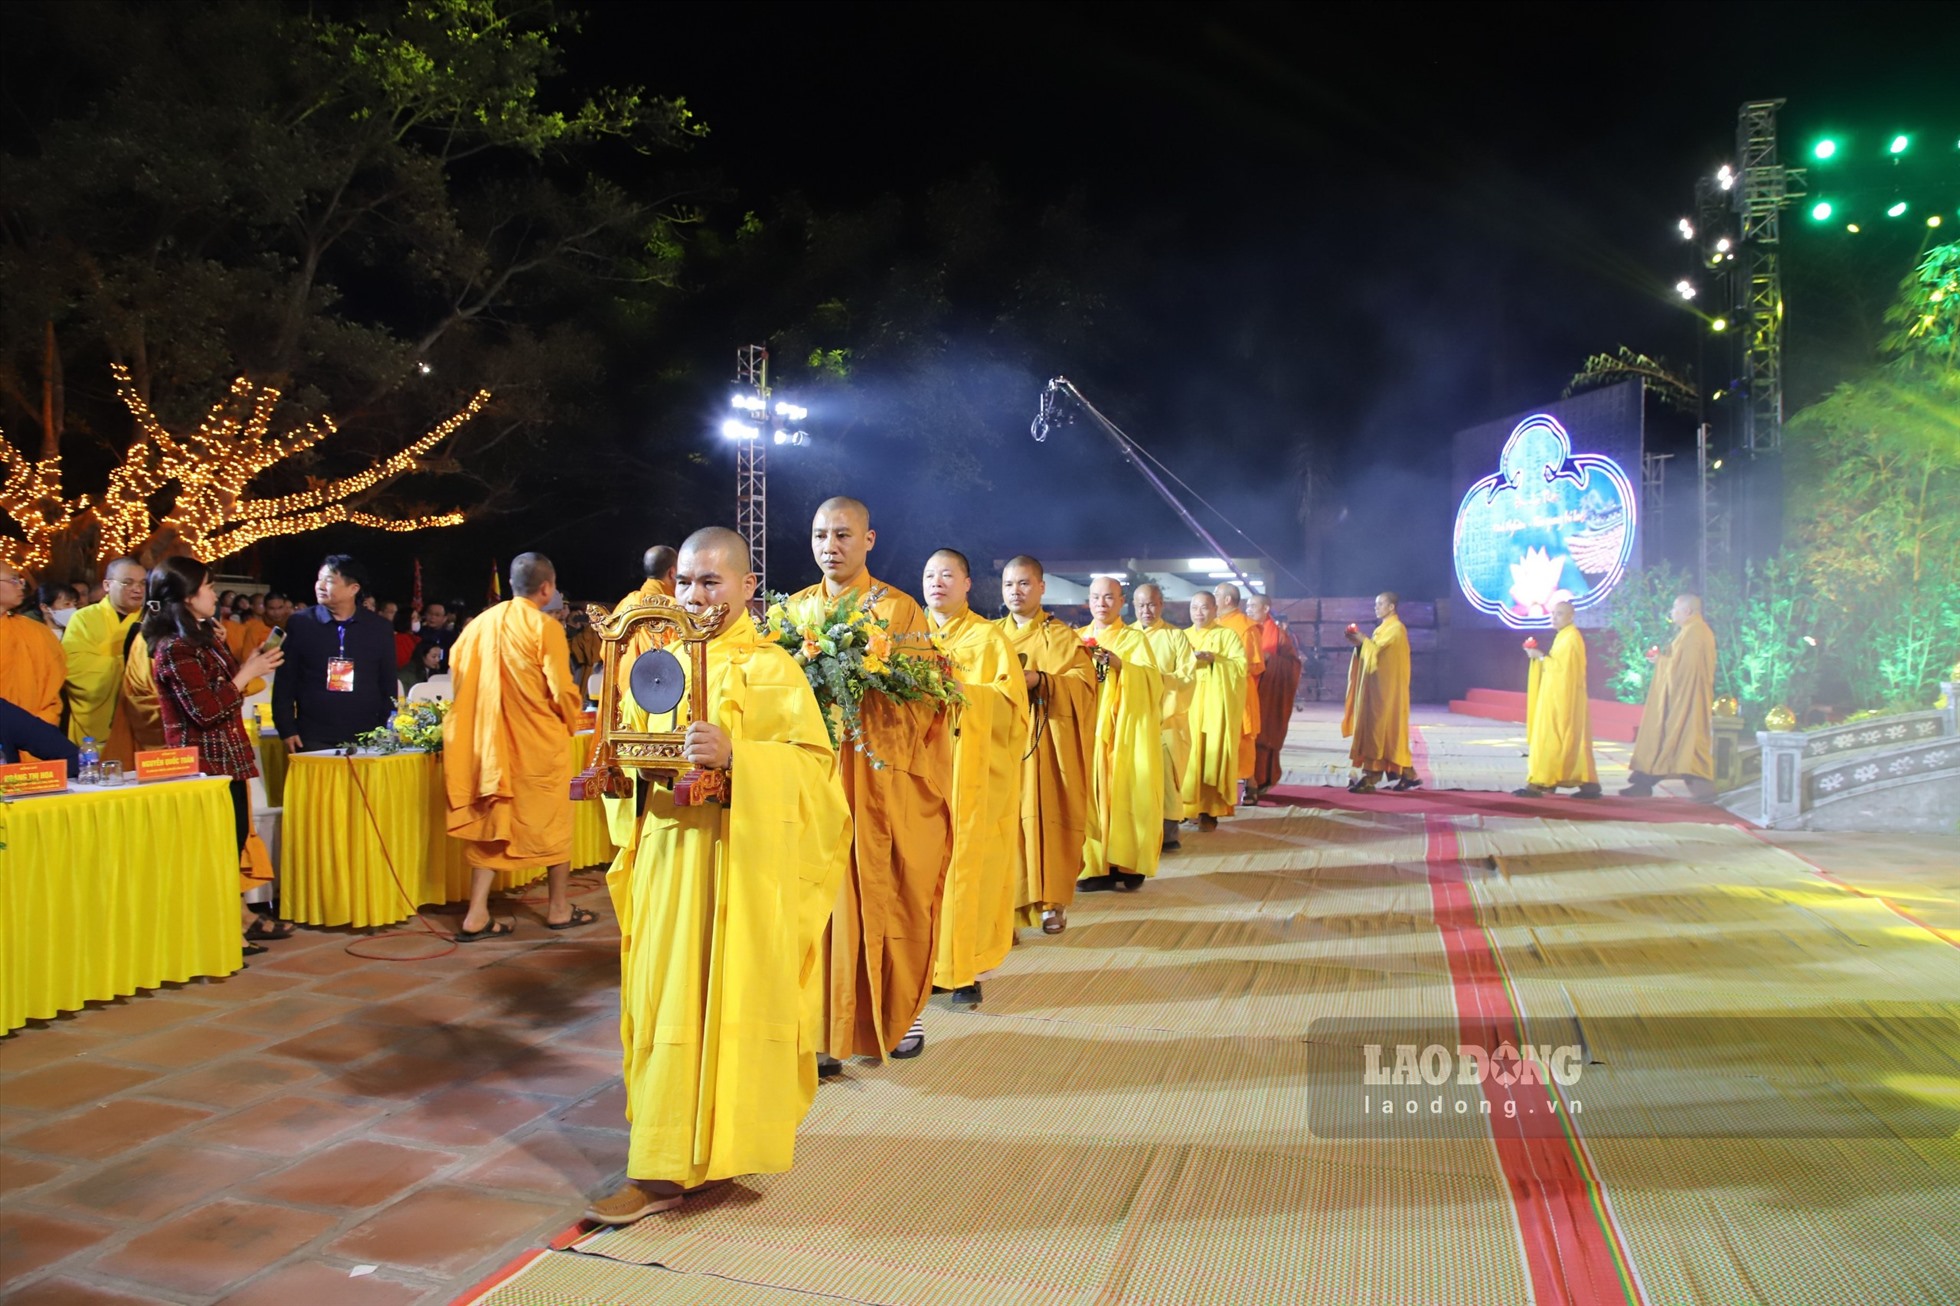 Đêm nhạc Phật chùa Vĩnh Nghiêm Chương trình có sự tham gia của nhiều nghệ sĩ, ca sĩ nổi tiếng và hàng trăm phật tử. Ảnh: Nguyễn Kế